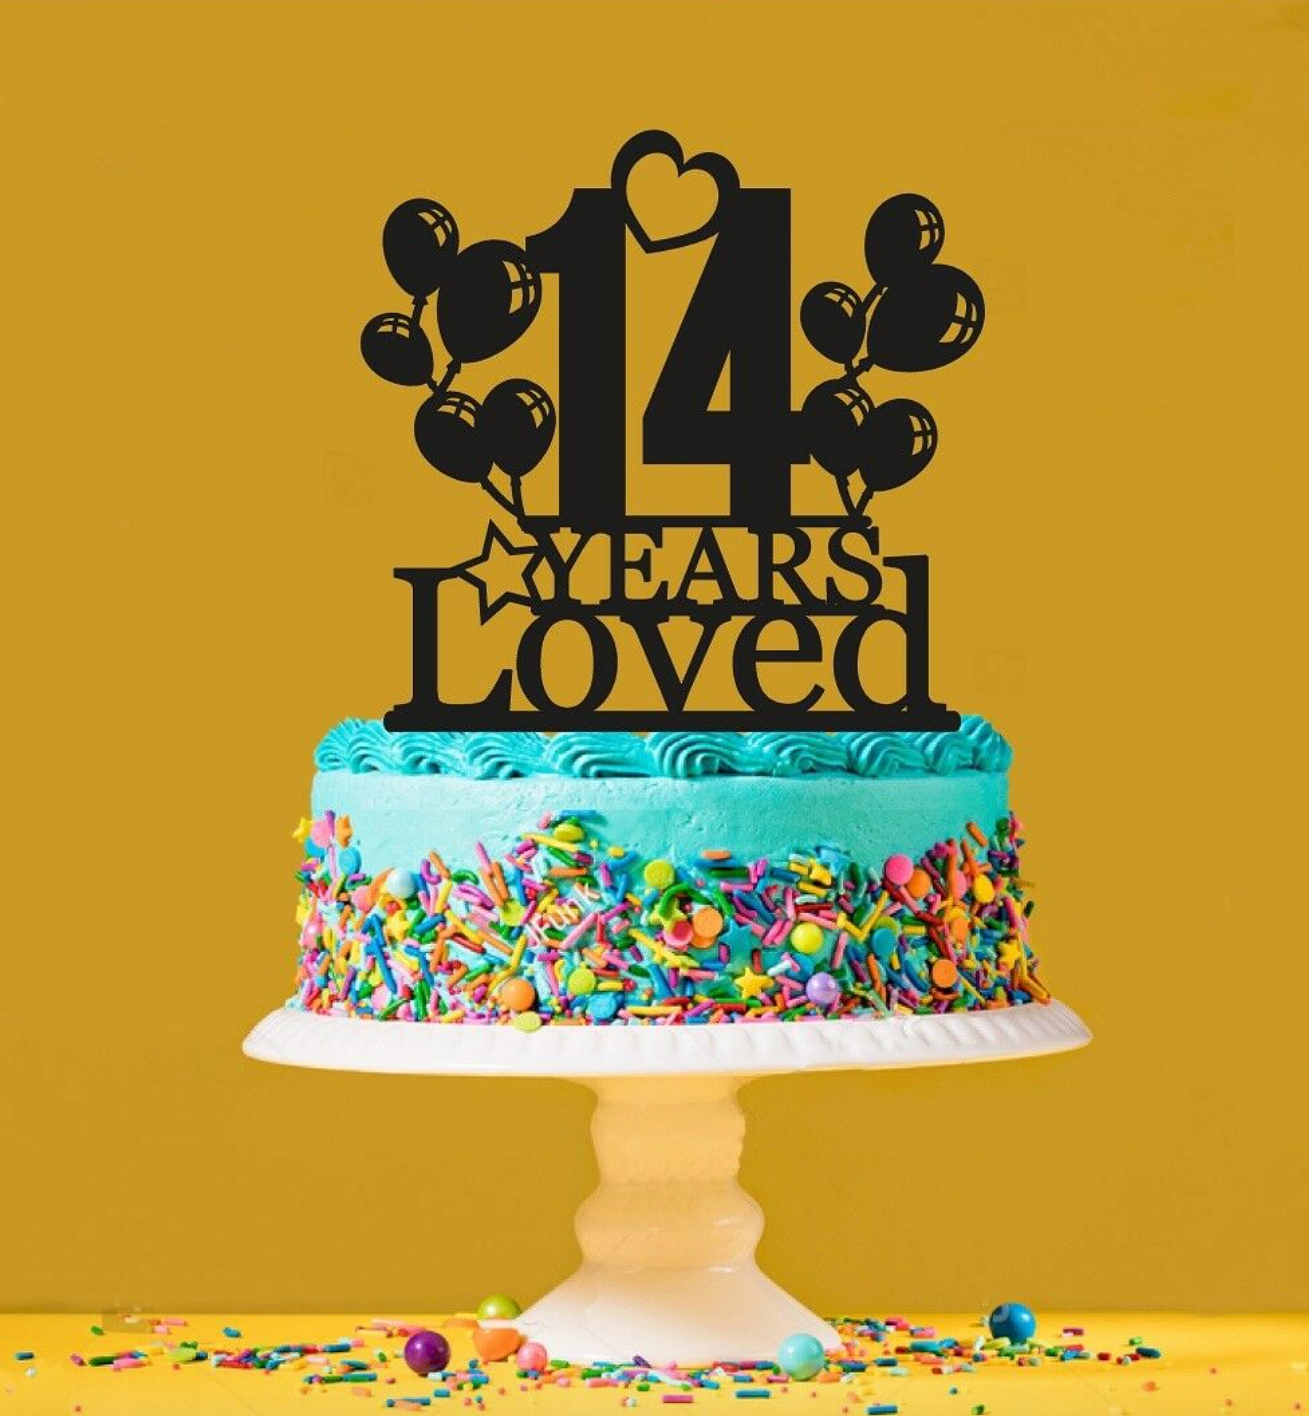 Happy 14th Anniversary @mysticmountainbobsledja #cake #fun  #mysticmountainbobsledja #skyexplorer #bobsled #zipline | Instagram